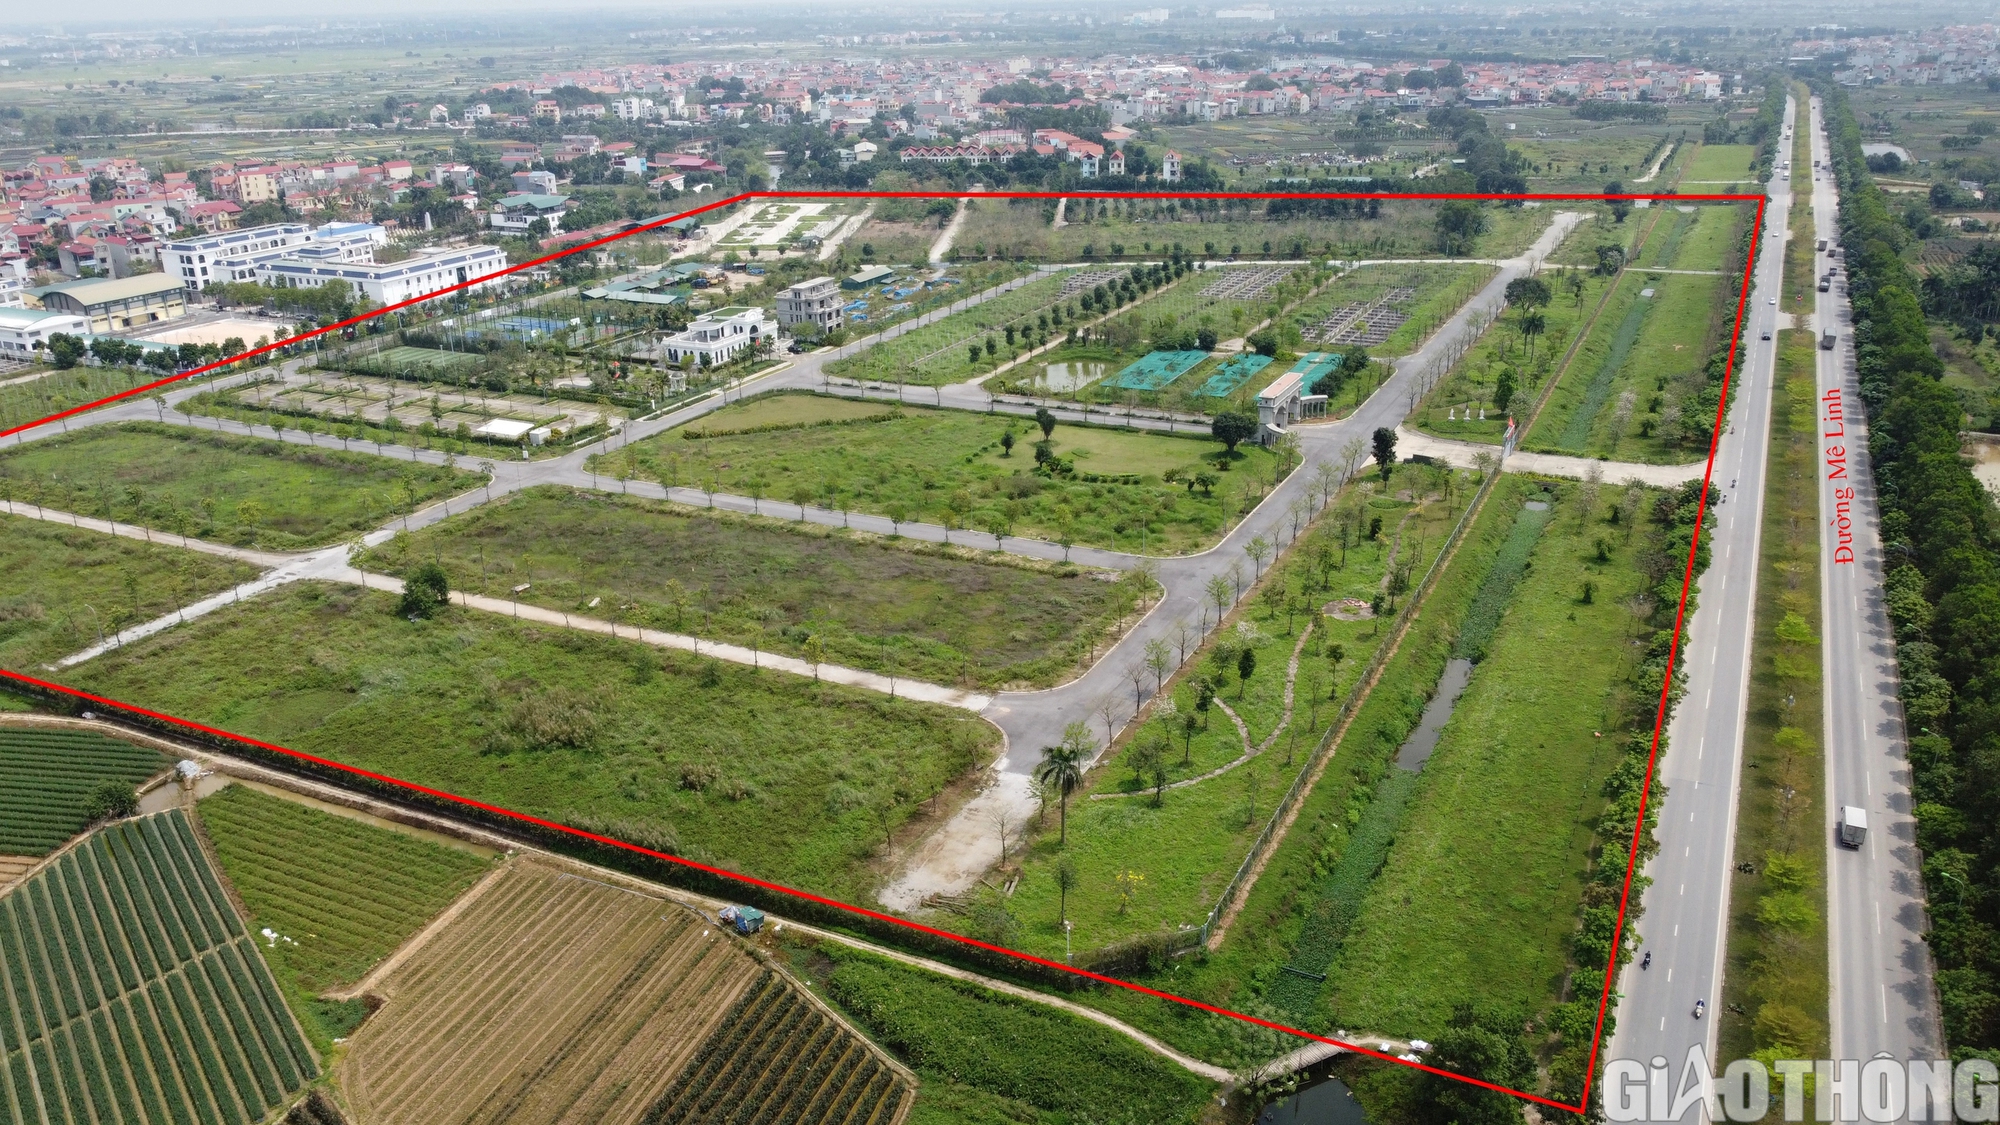 Cỏ mọc phủ dự án bất động sản nghìn tỷ ở Hà Nội- Ảnh 1.